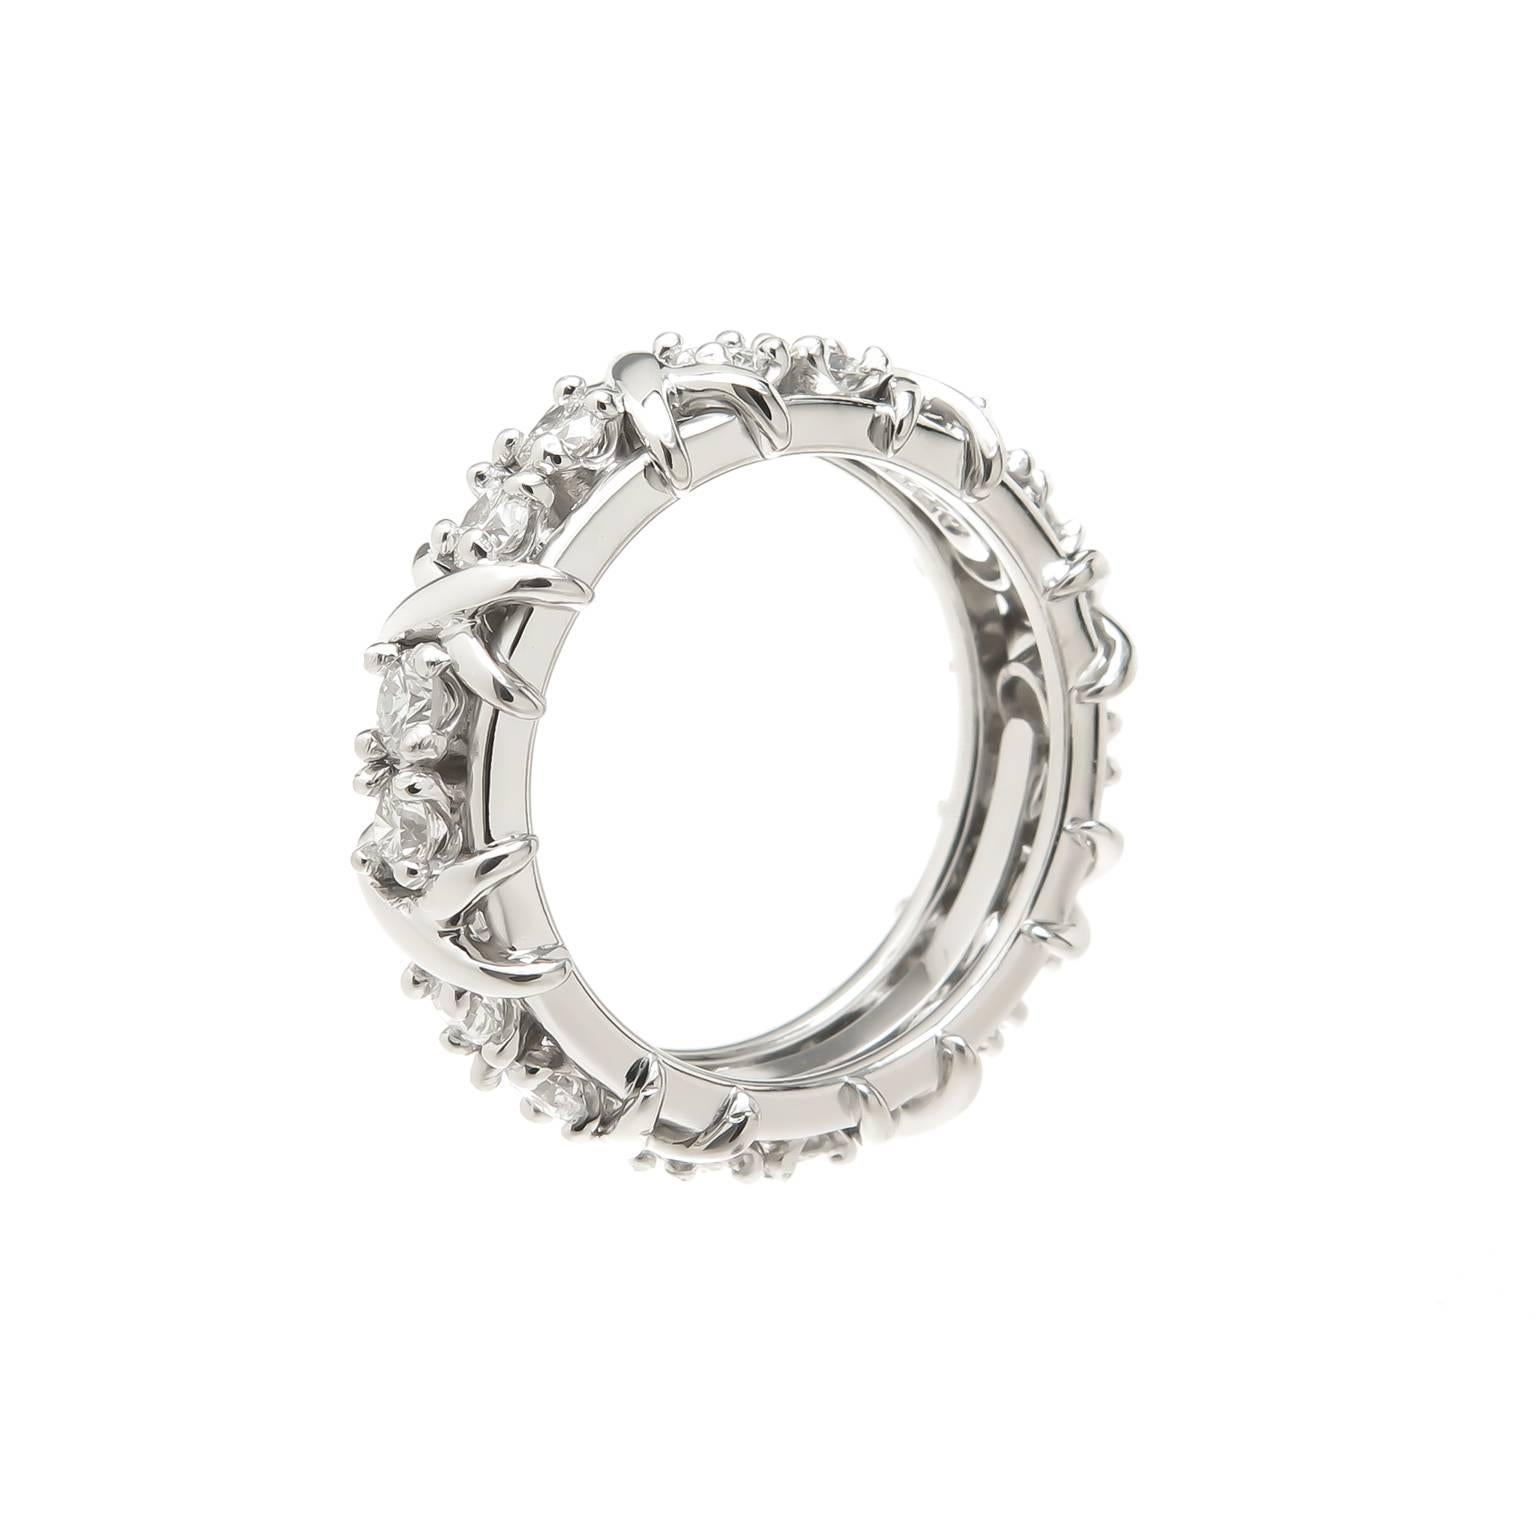 Circa 2005 Jean Schlumberger for Tiffany & Company Platinum X Band Ring, mesurant 6 MM de large et serti de 16 diamants ronds de taille brillant totalisant 1.16 carats. Taille du doigt = 6 1/2. Excellent état, presque jamais porté.  Livré dans sa